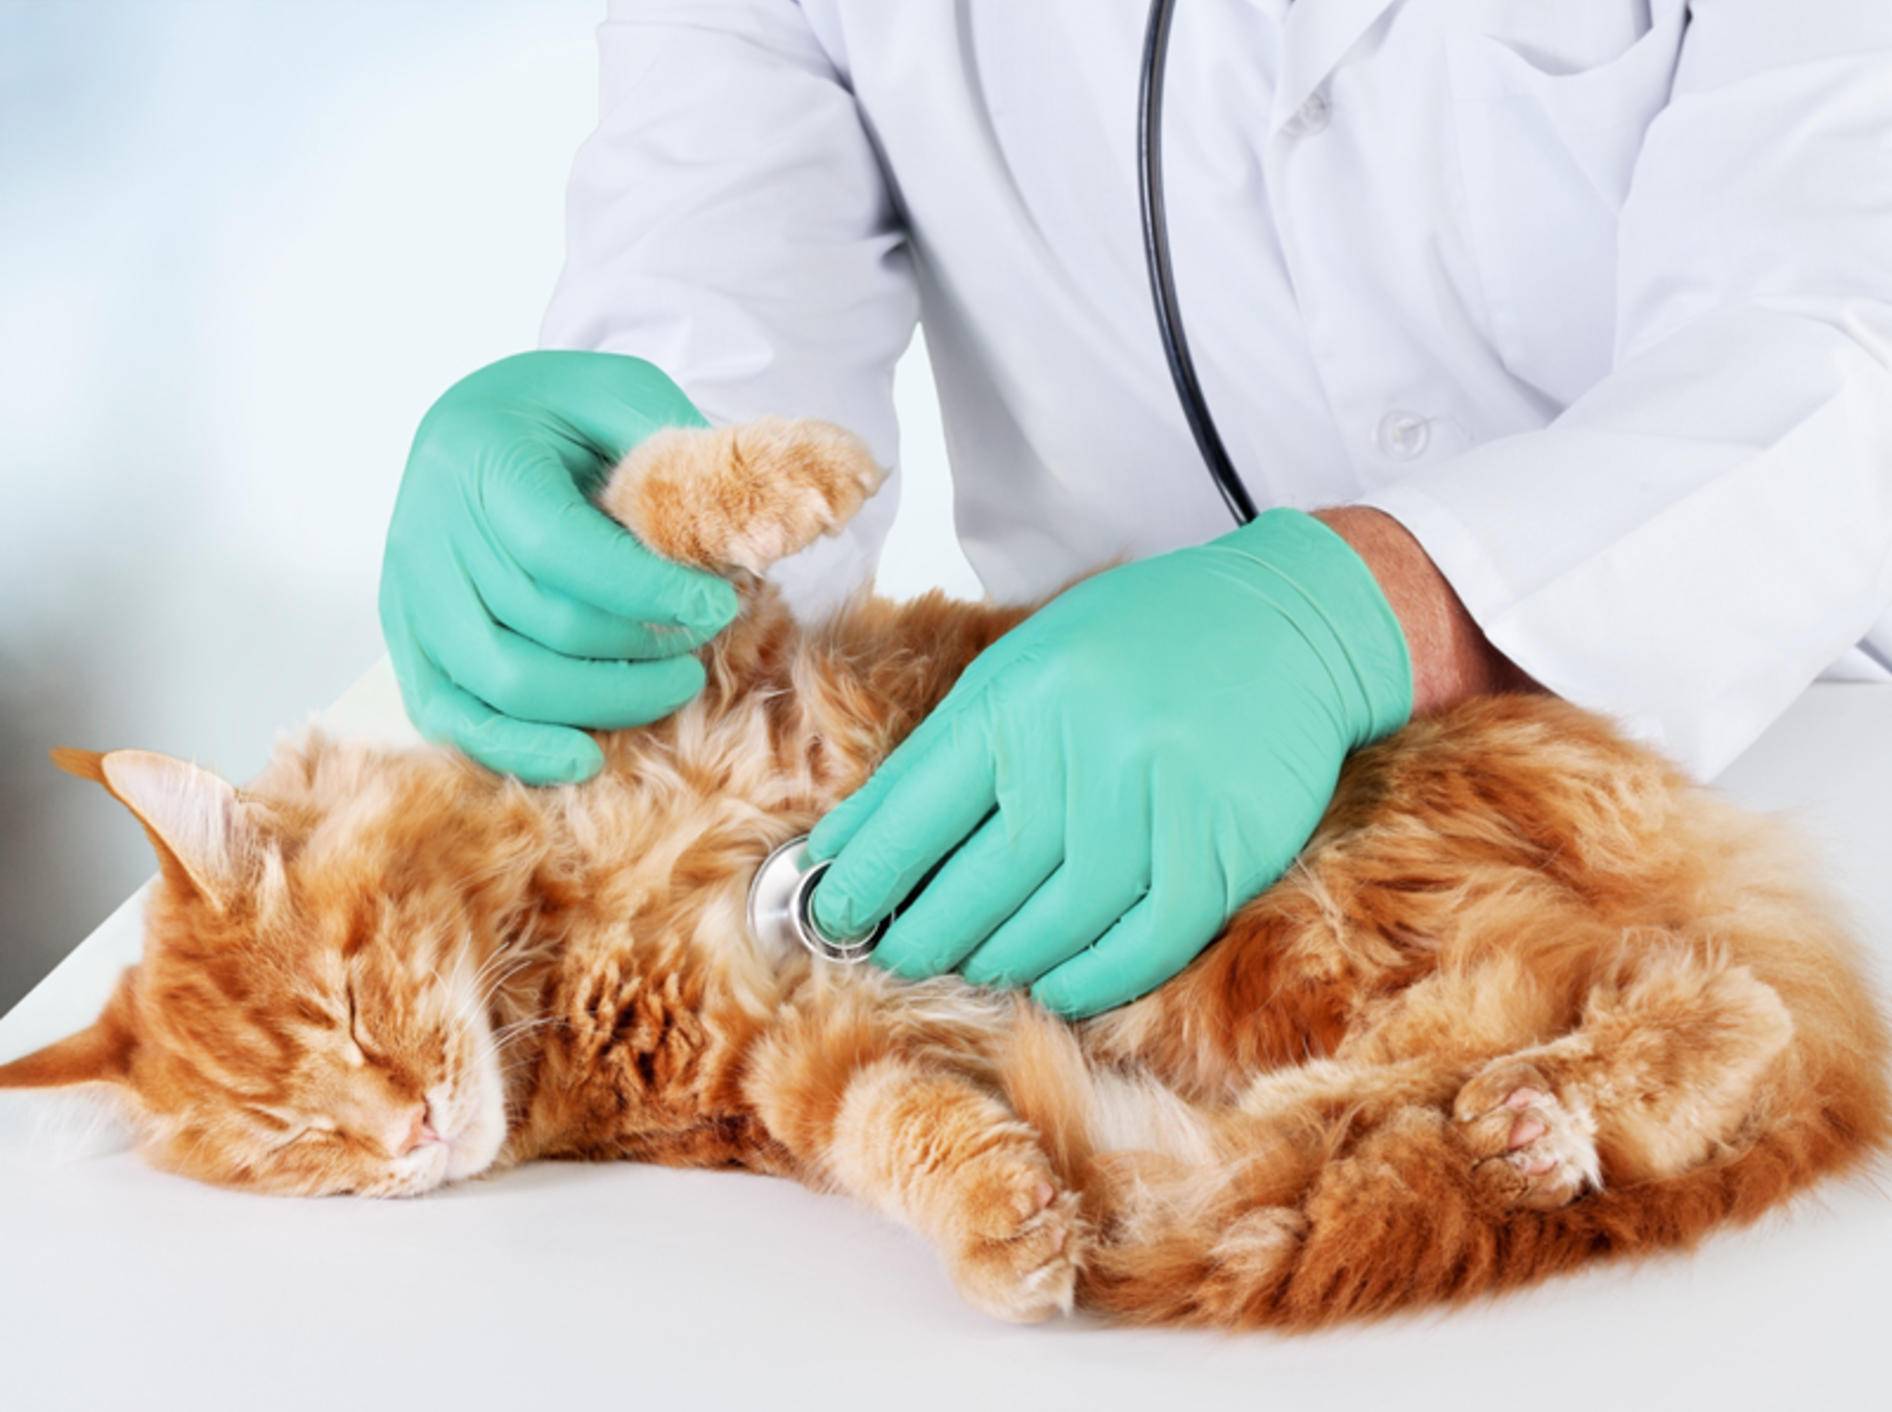 Bei einem Darmverschluss kommt Ihre Katze um eine OP nicht herum – Shutterstock / www.BillionPhotos.com